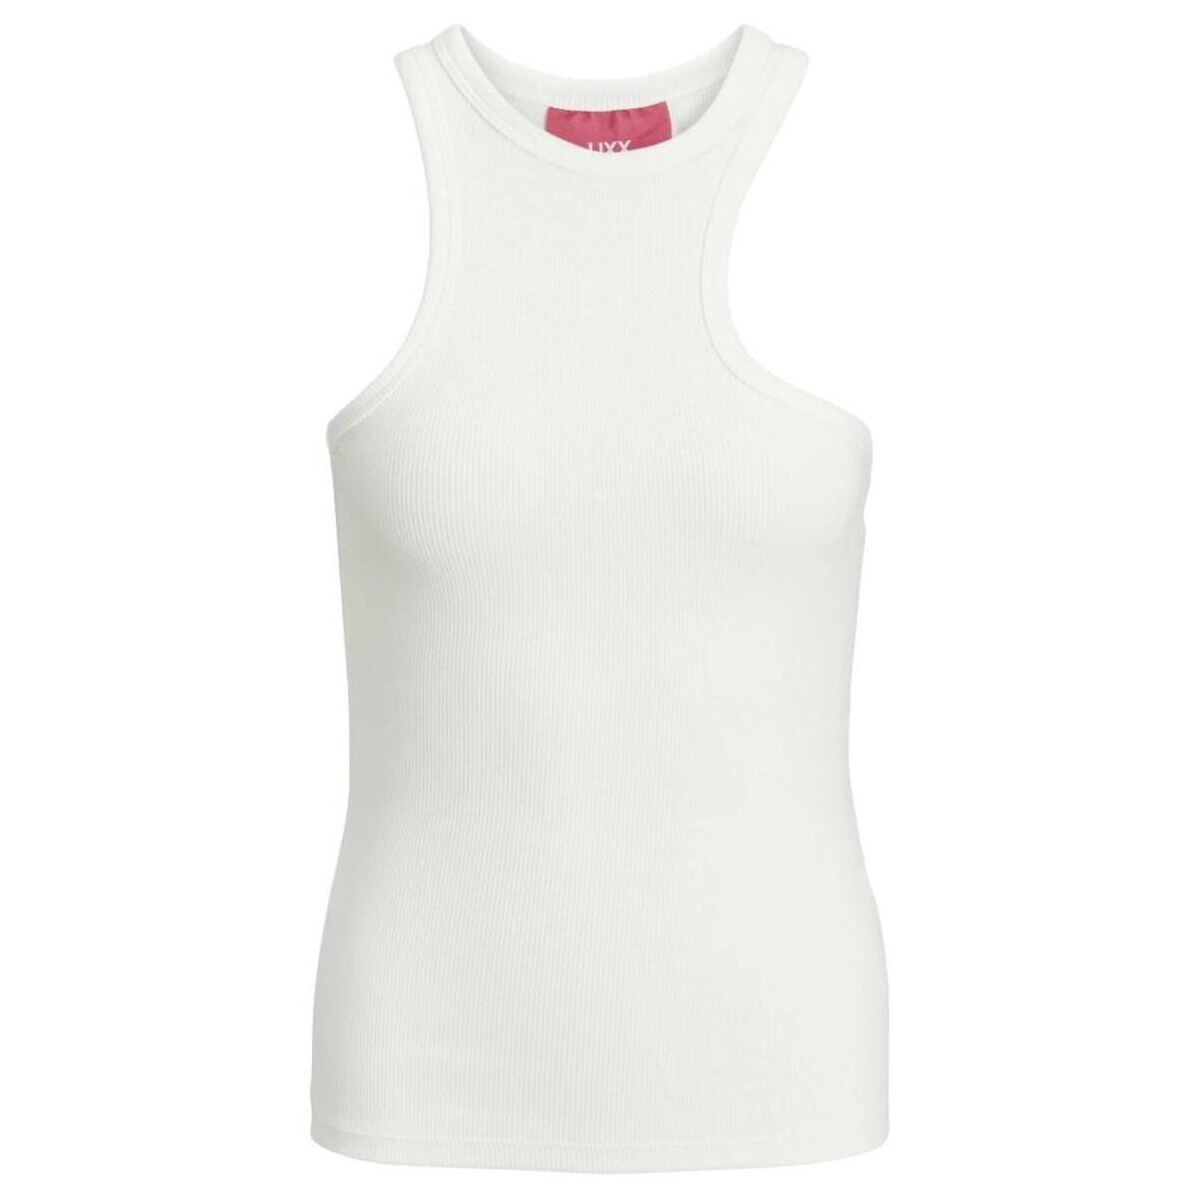 Υφασμάτινα Γυναίκα T-shirt με κοντά μανίκια Jjxx  Άσπρο